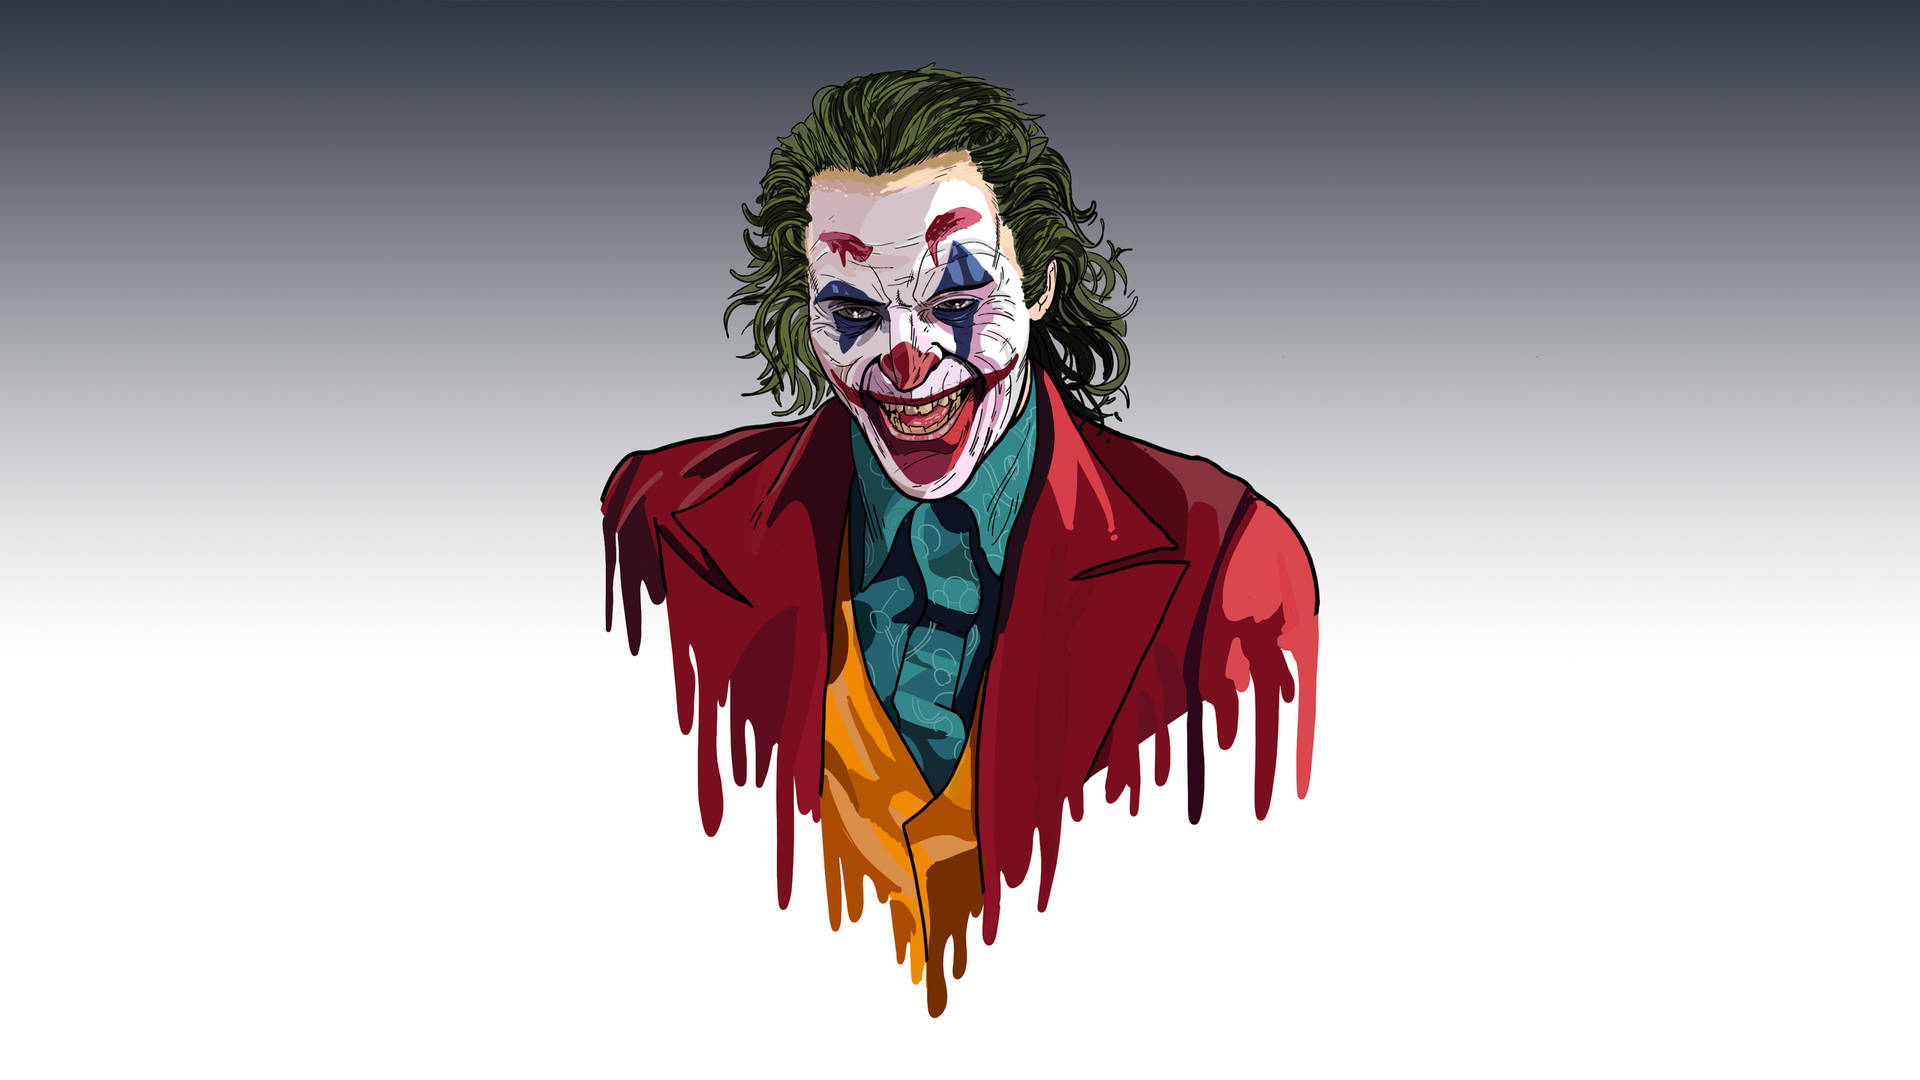 Joker 2019 bust sketch wallpaper